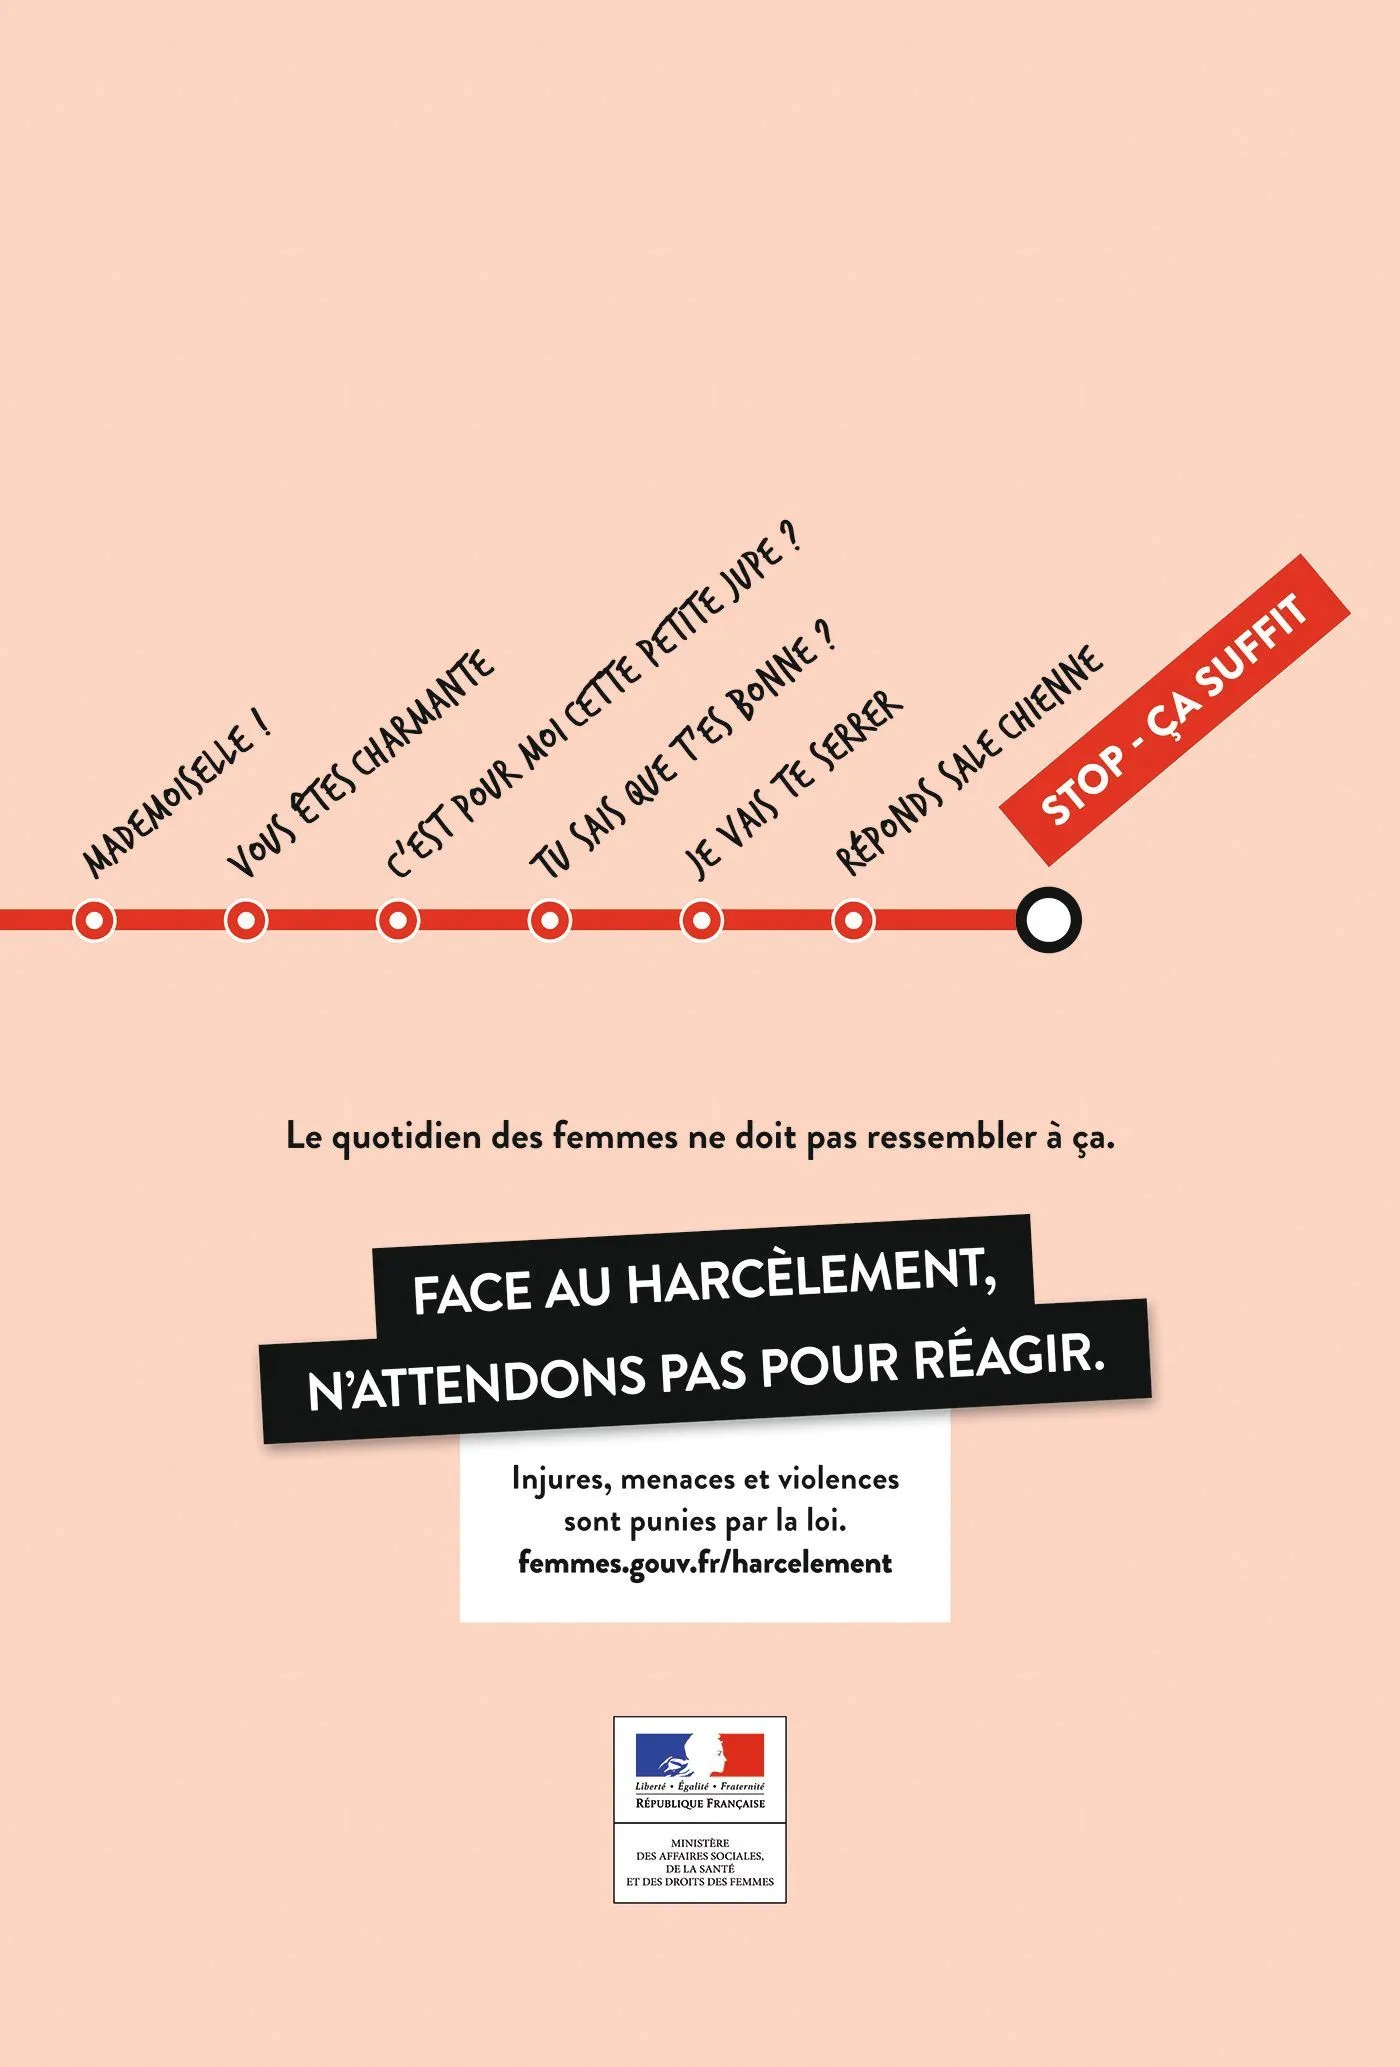 Campagne de sensibilisation « Face au harcèlement, n'attendons pas pour agir », secrétariat d'État chargé de l'Égalité entre les femmes et les hommes et de la lutte contre les discriminations, 2015.